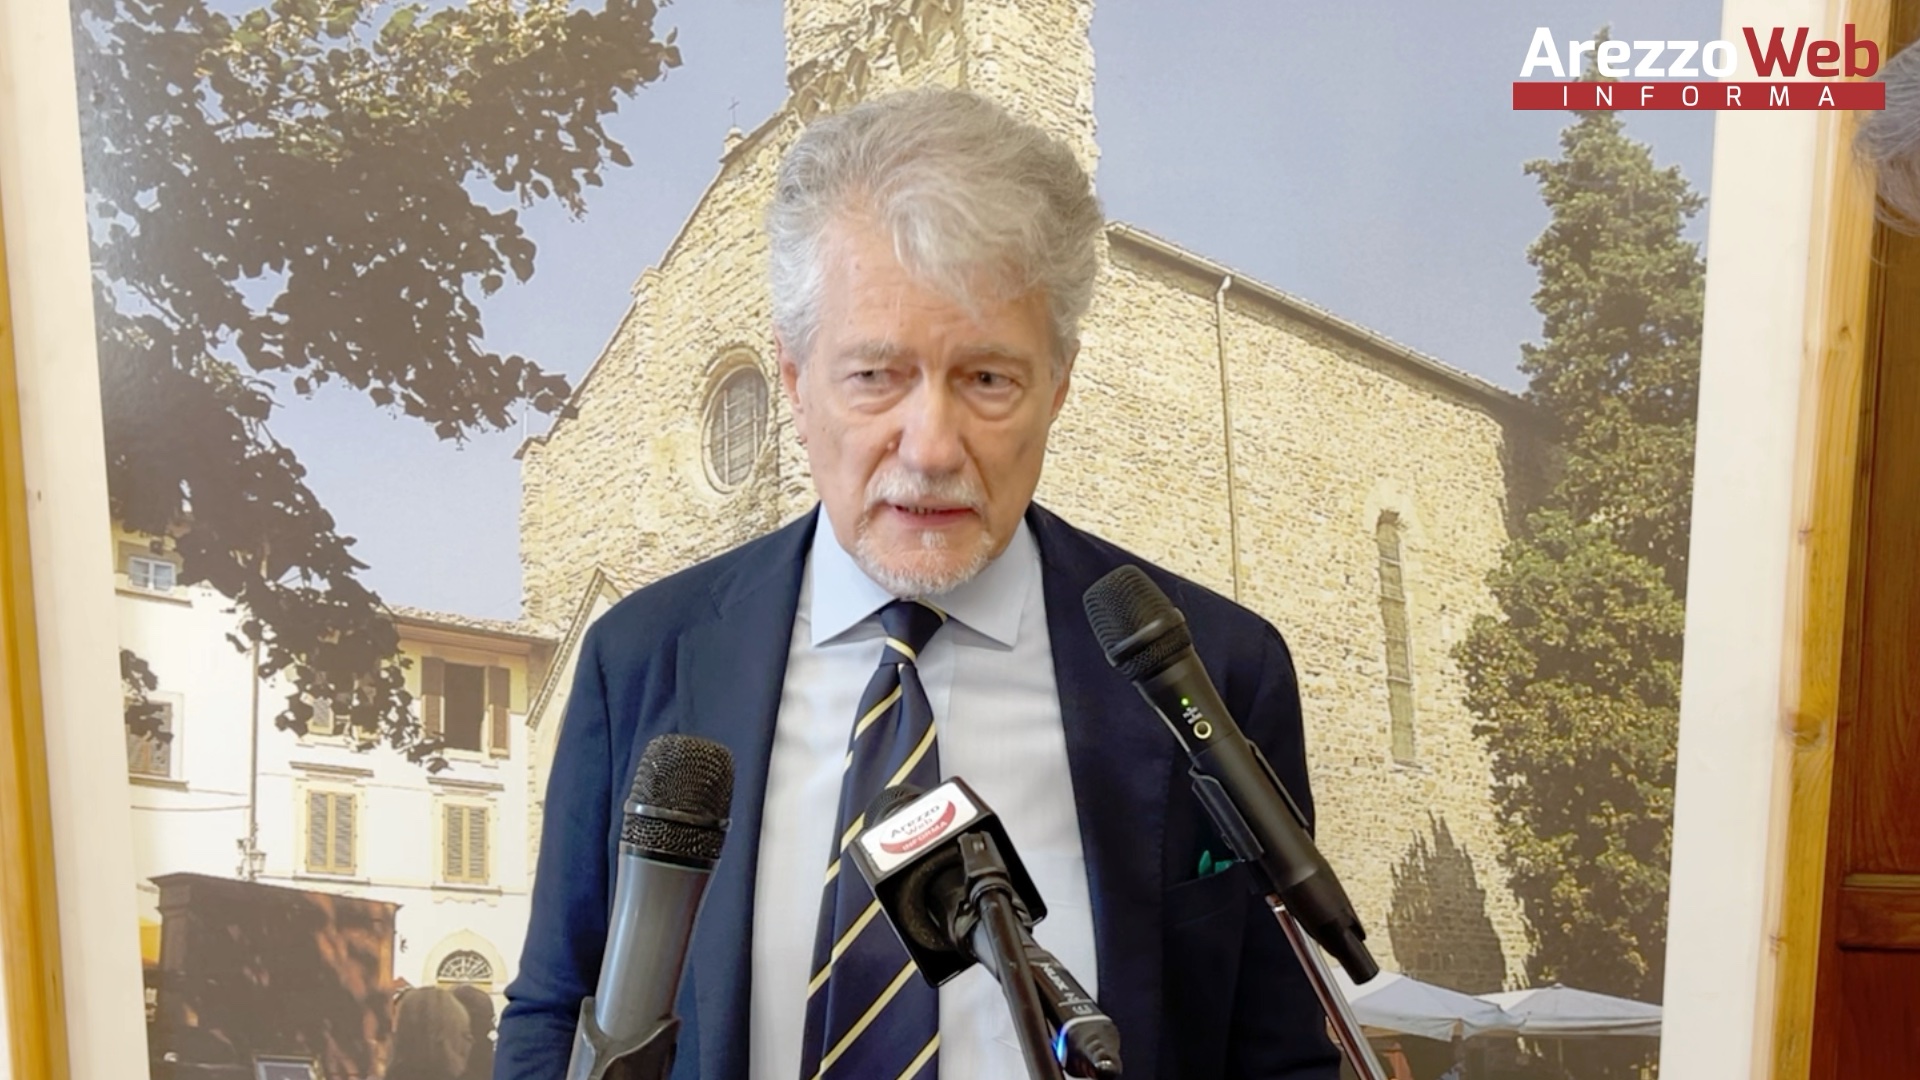 Il sindaco Alessandro Ghinelli: “presidente Giani, sulla sanità dica da che parte sta: con Arezzo o con la burocrazia della ‘sua’ Asl”